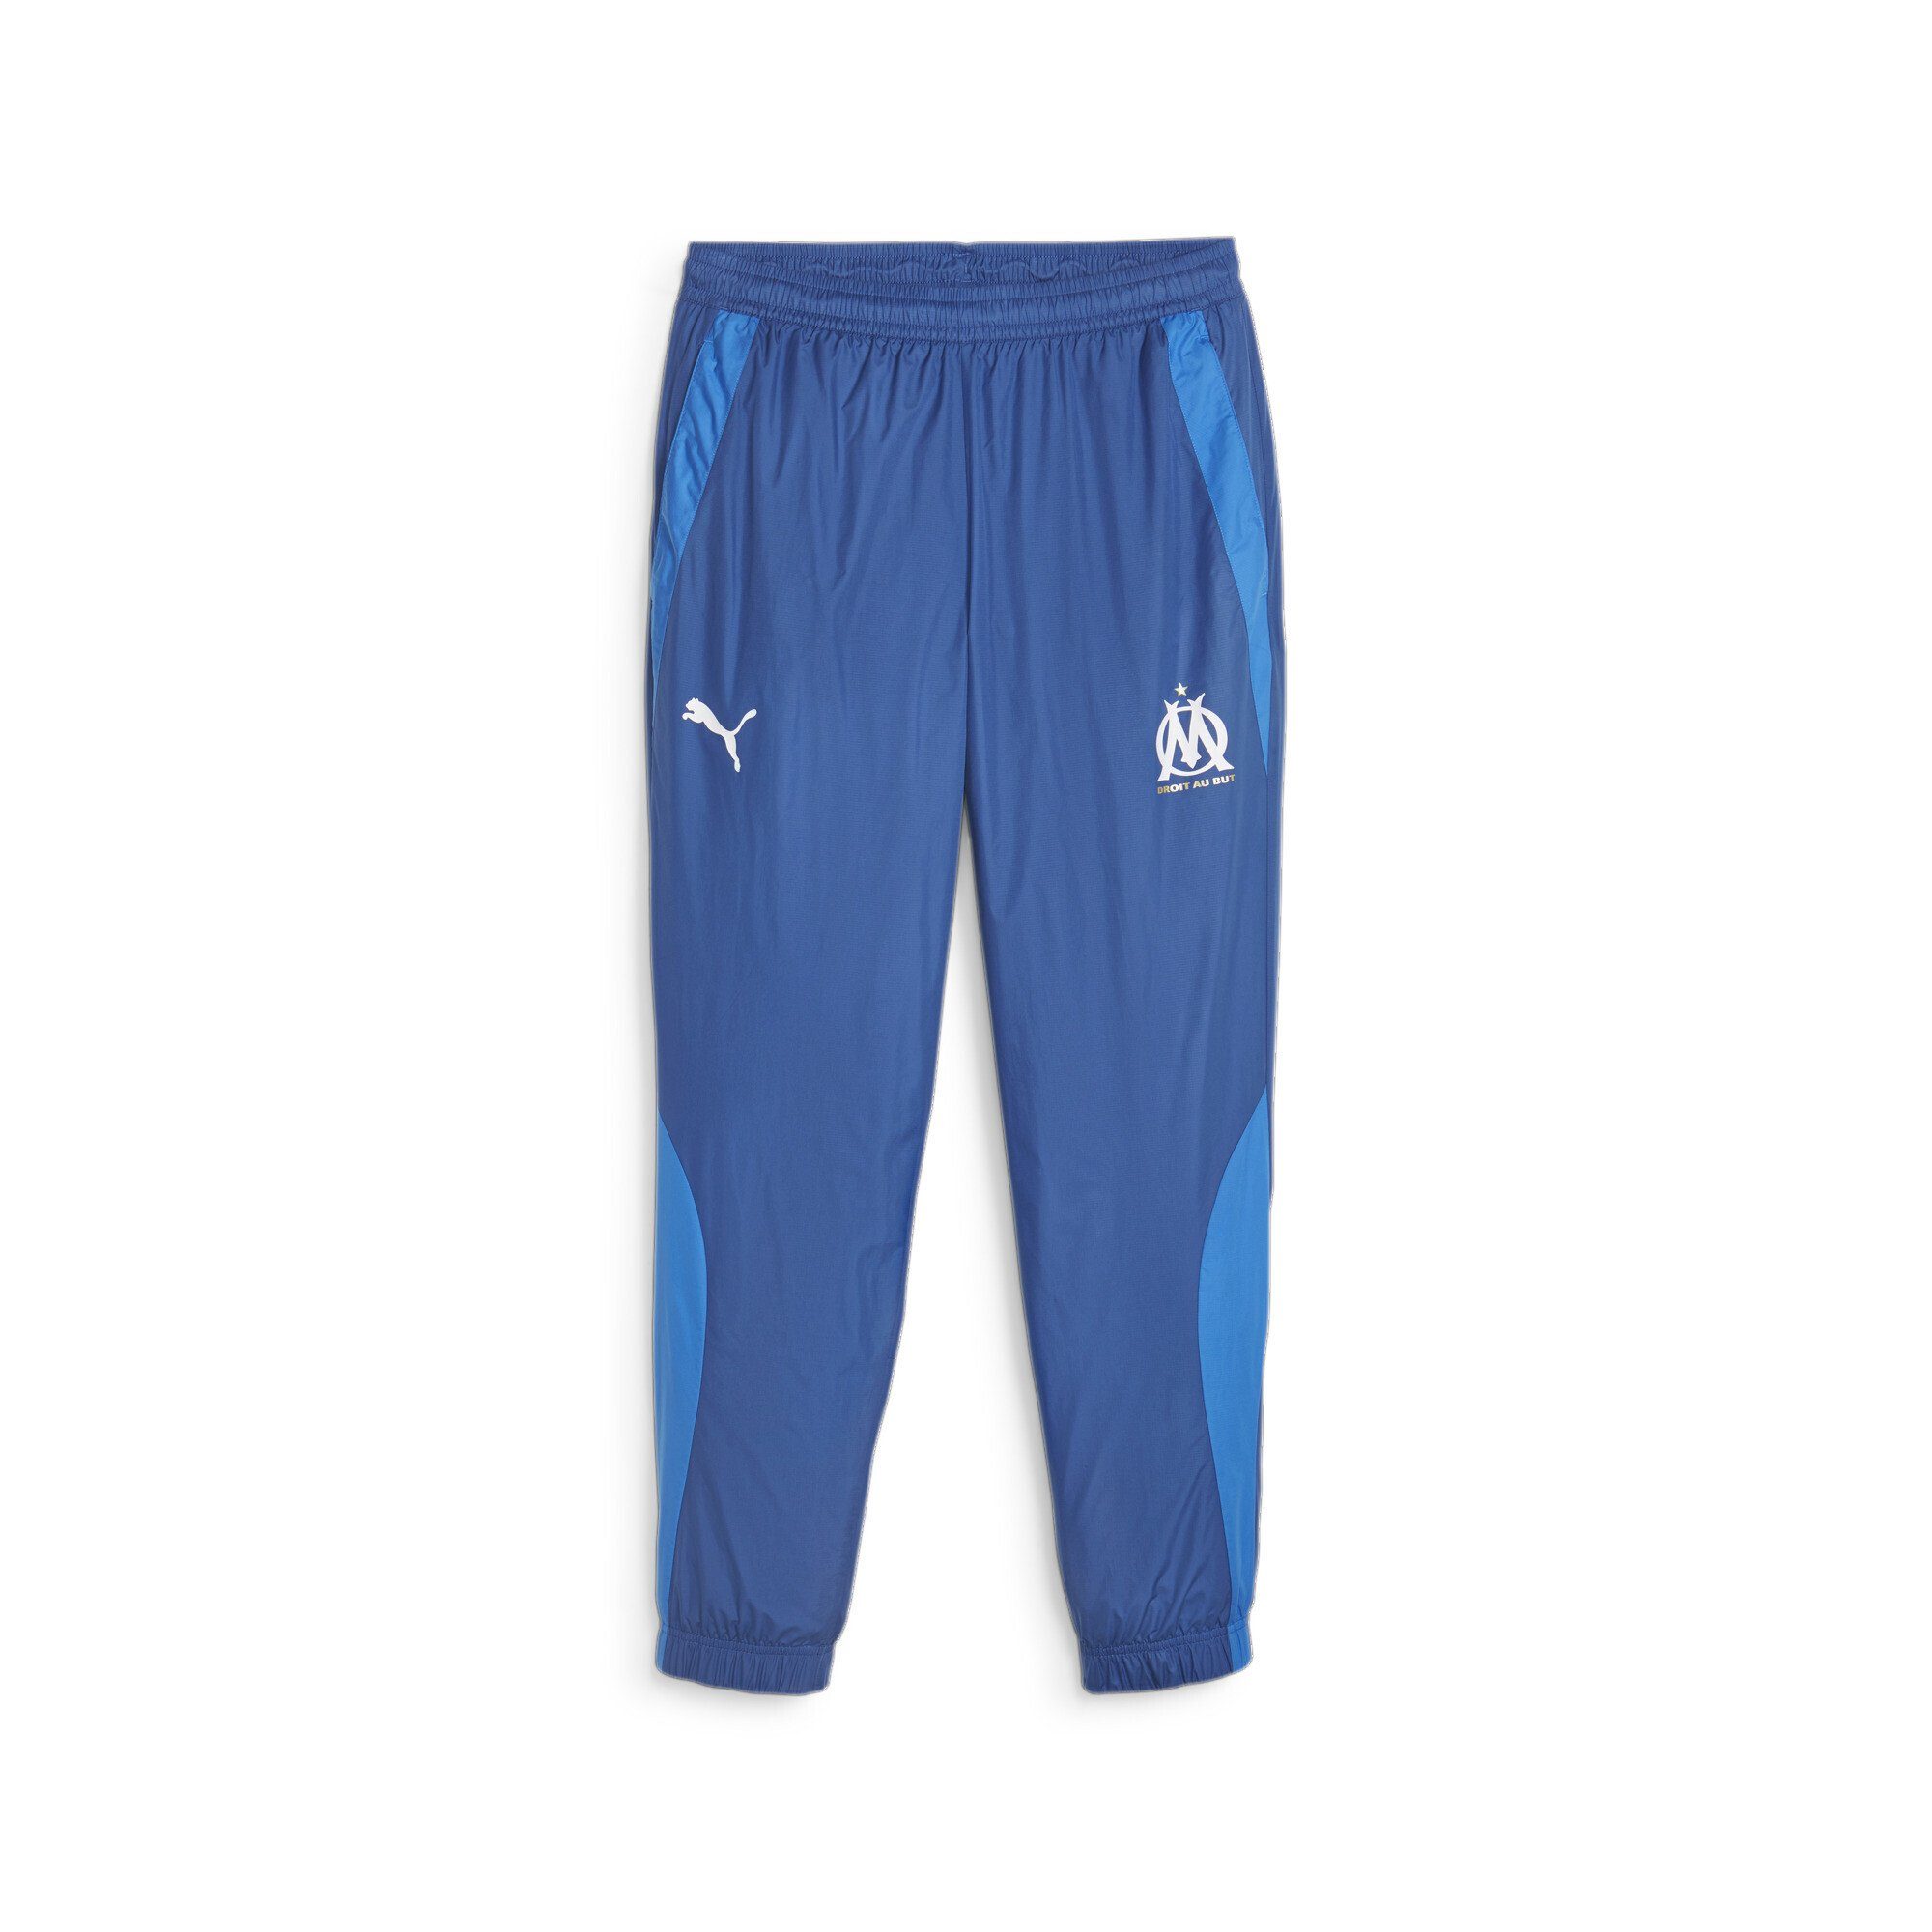 PUMA Sporthose Olympique de Marseille Prematch Fußballhose Herren Team Royal Clyde Blue | Turnhosen